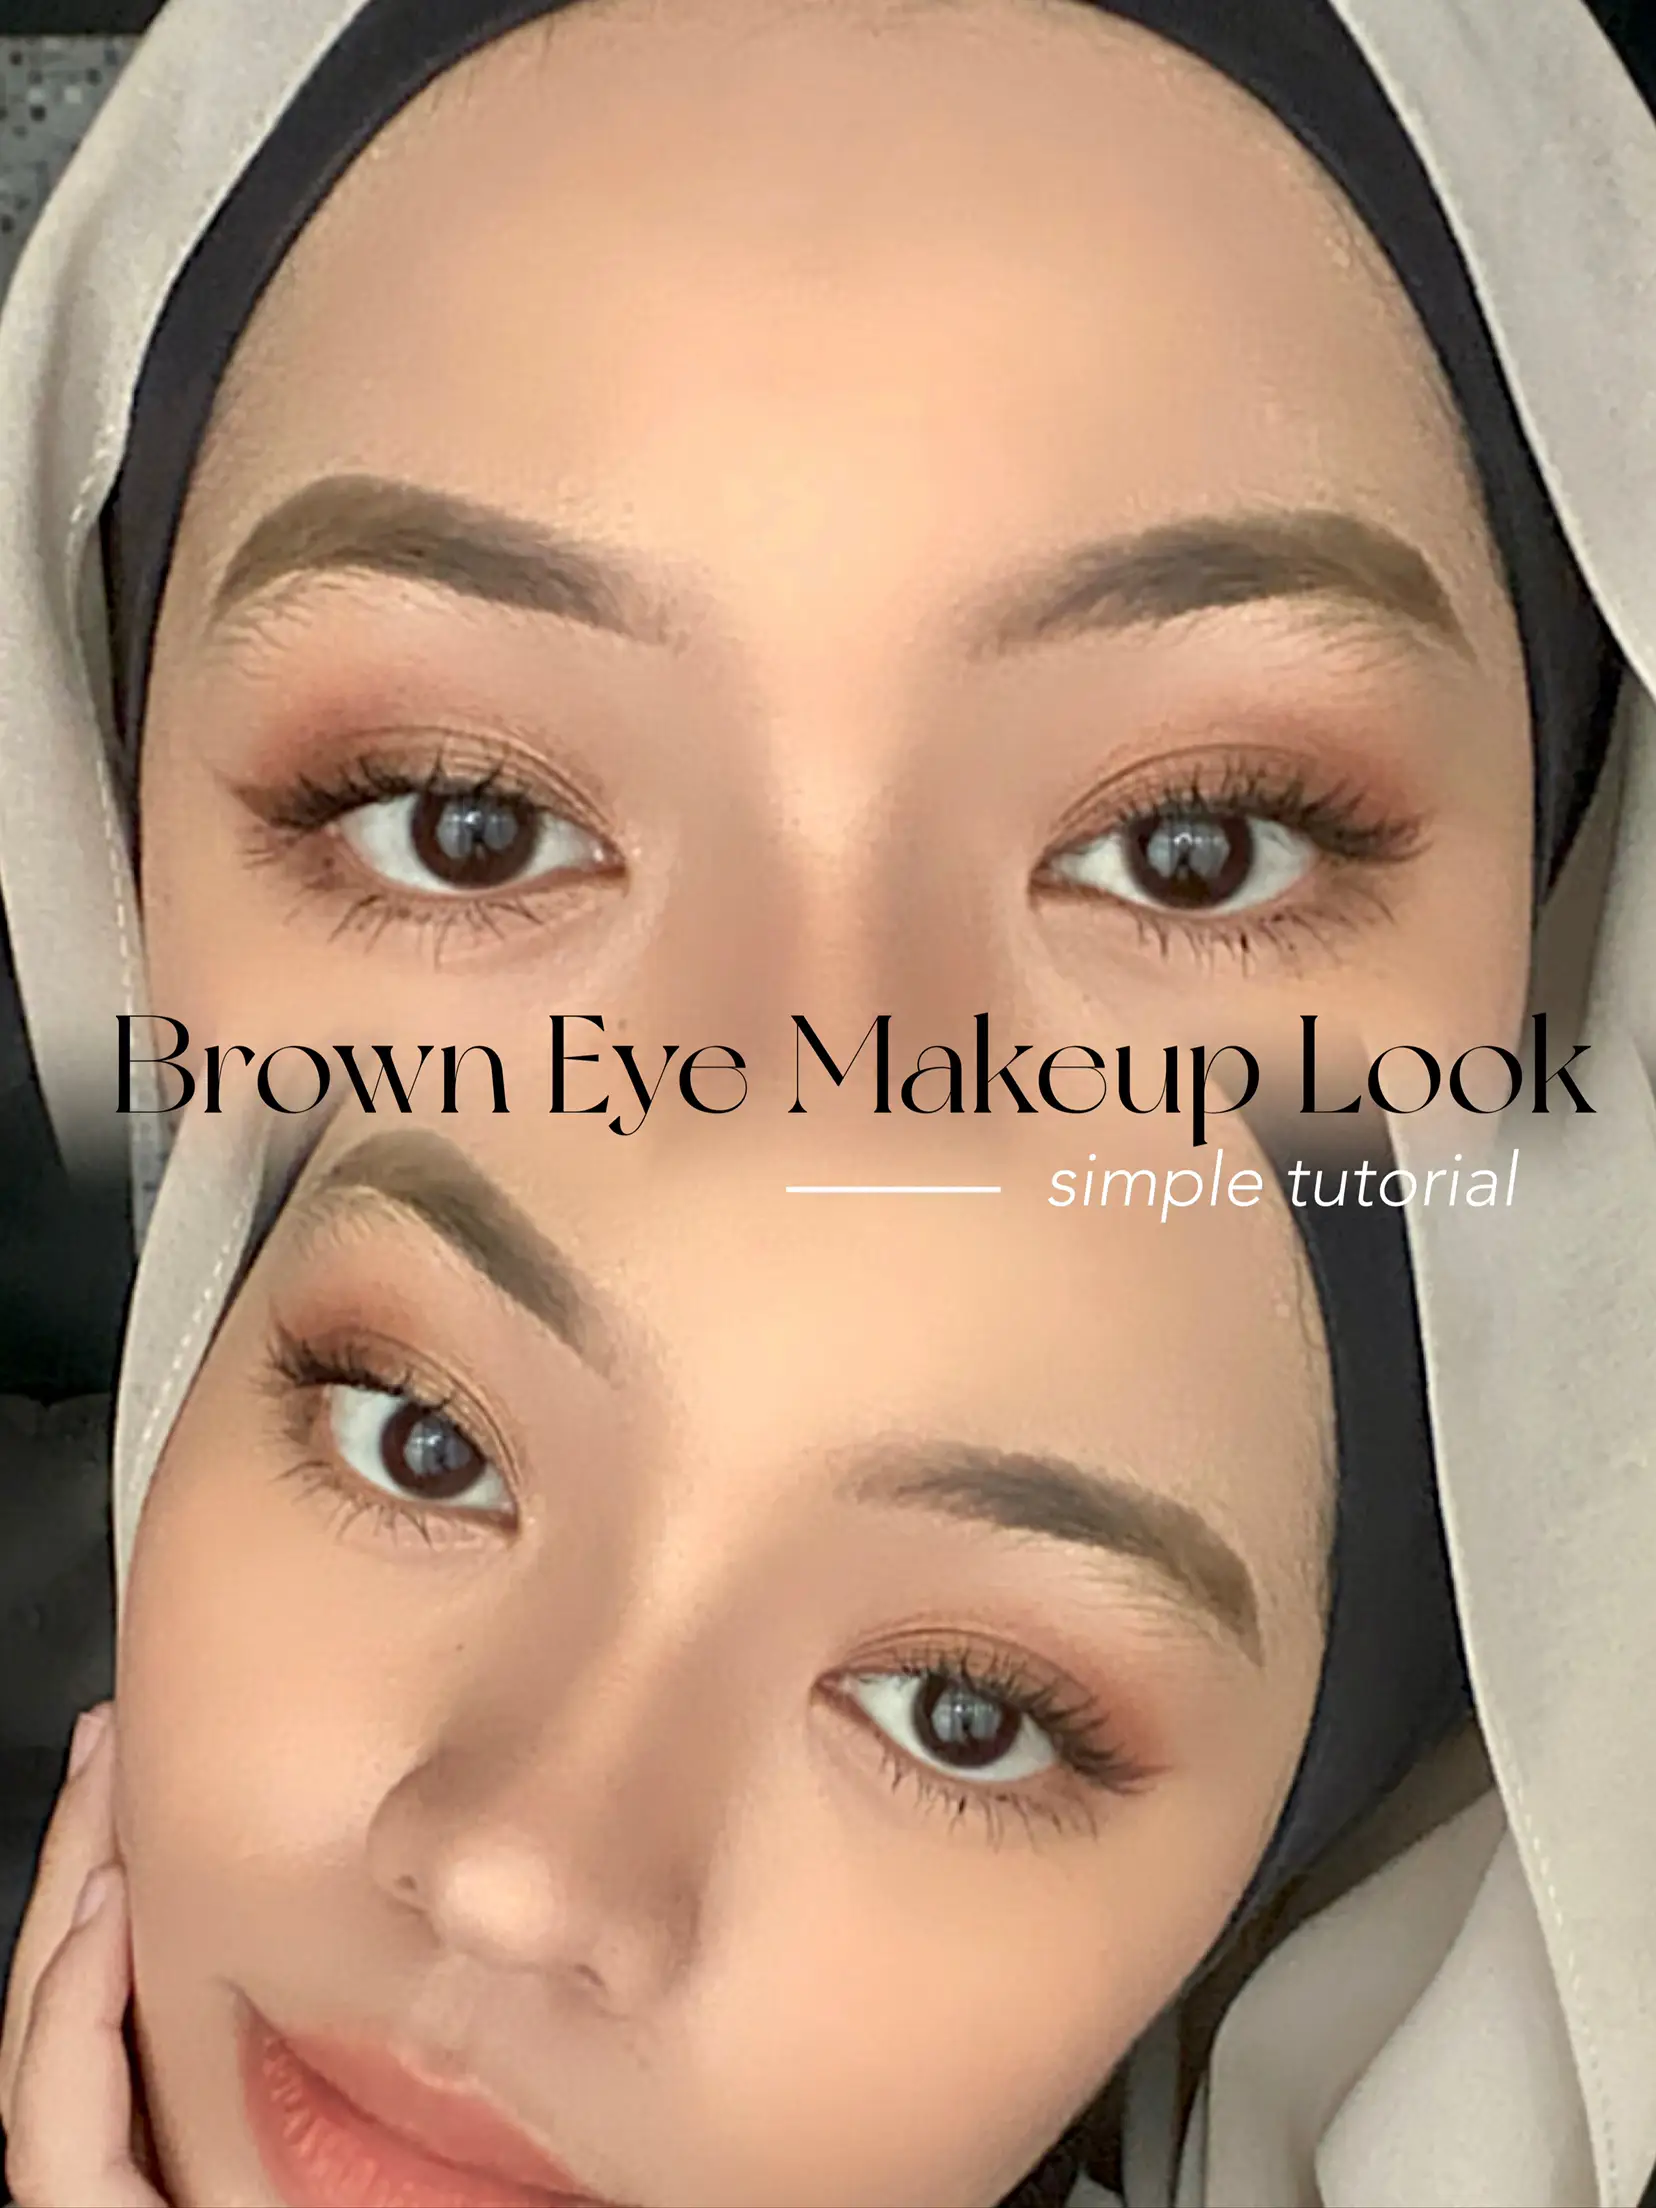 Brown Eye Makeup Look Tutorial